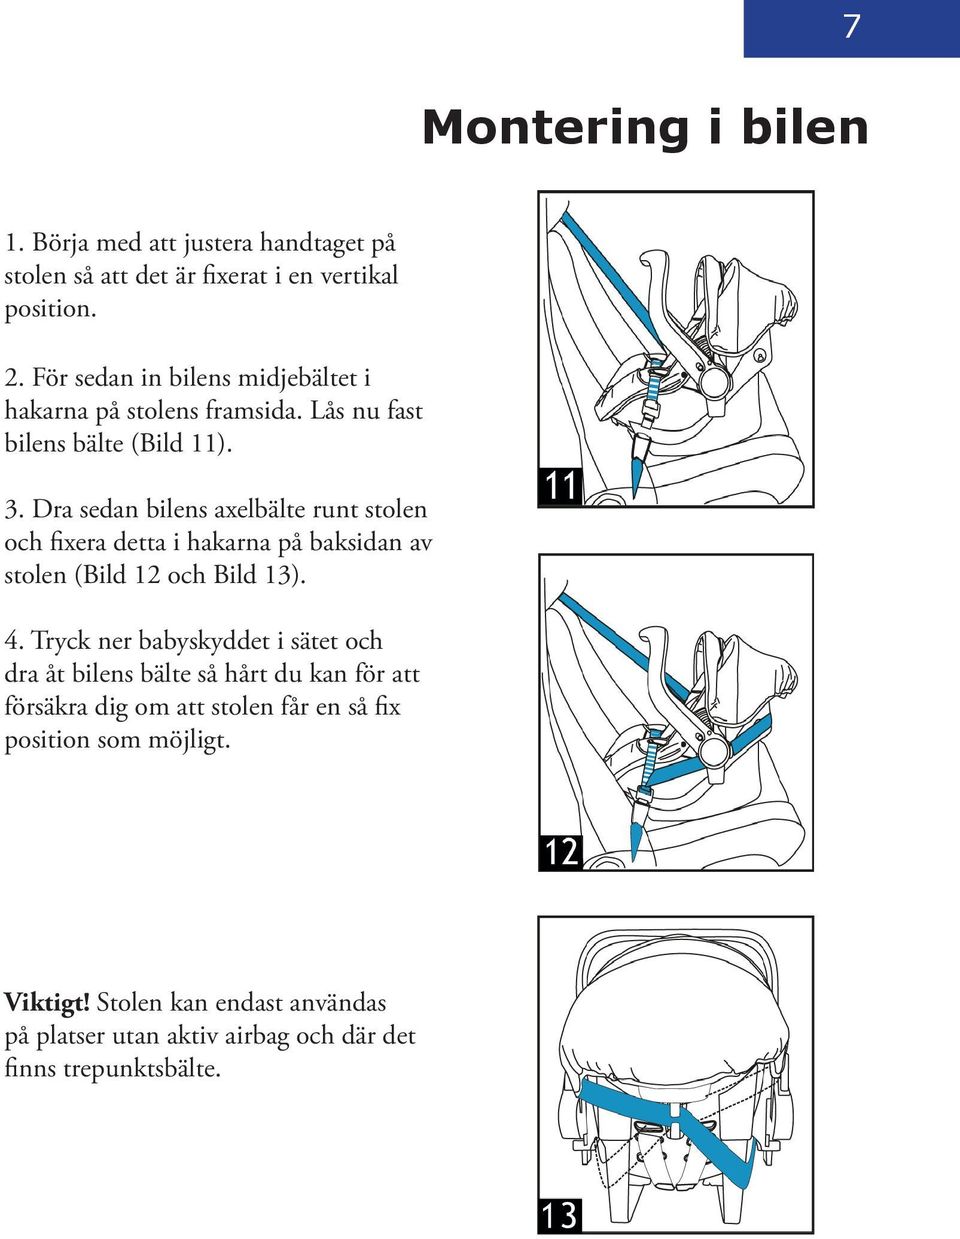 Dra sedan bilens axelbälte runt stolen och fixera detta i hakarna på baksidan av stolen (Bild 12 och Bild 13). 4.